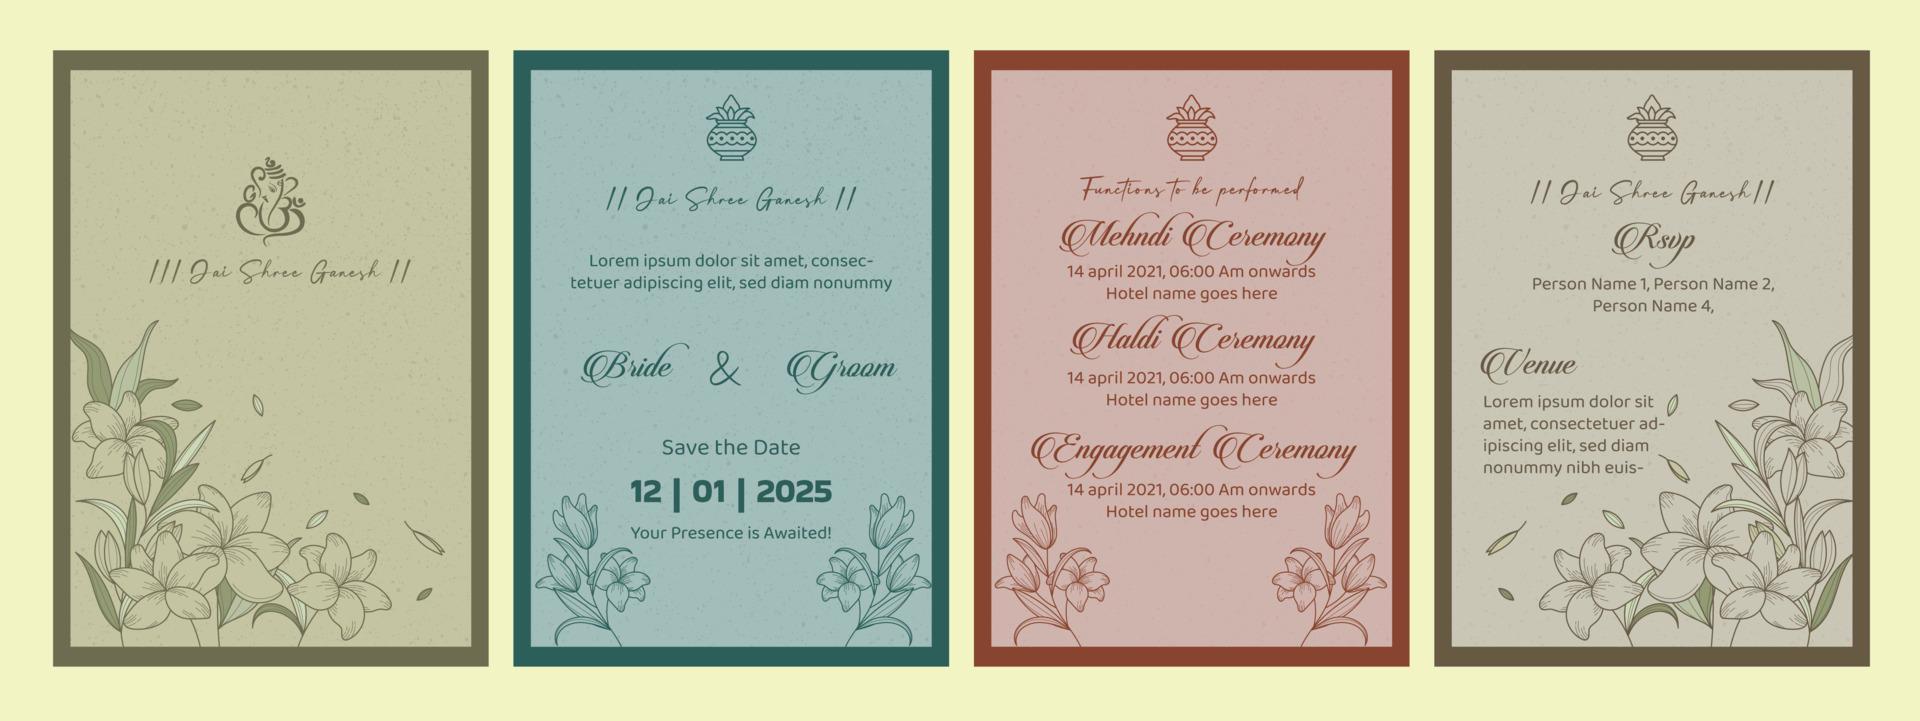 Indiase bruiloft uitnodiging sjabloon vector